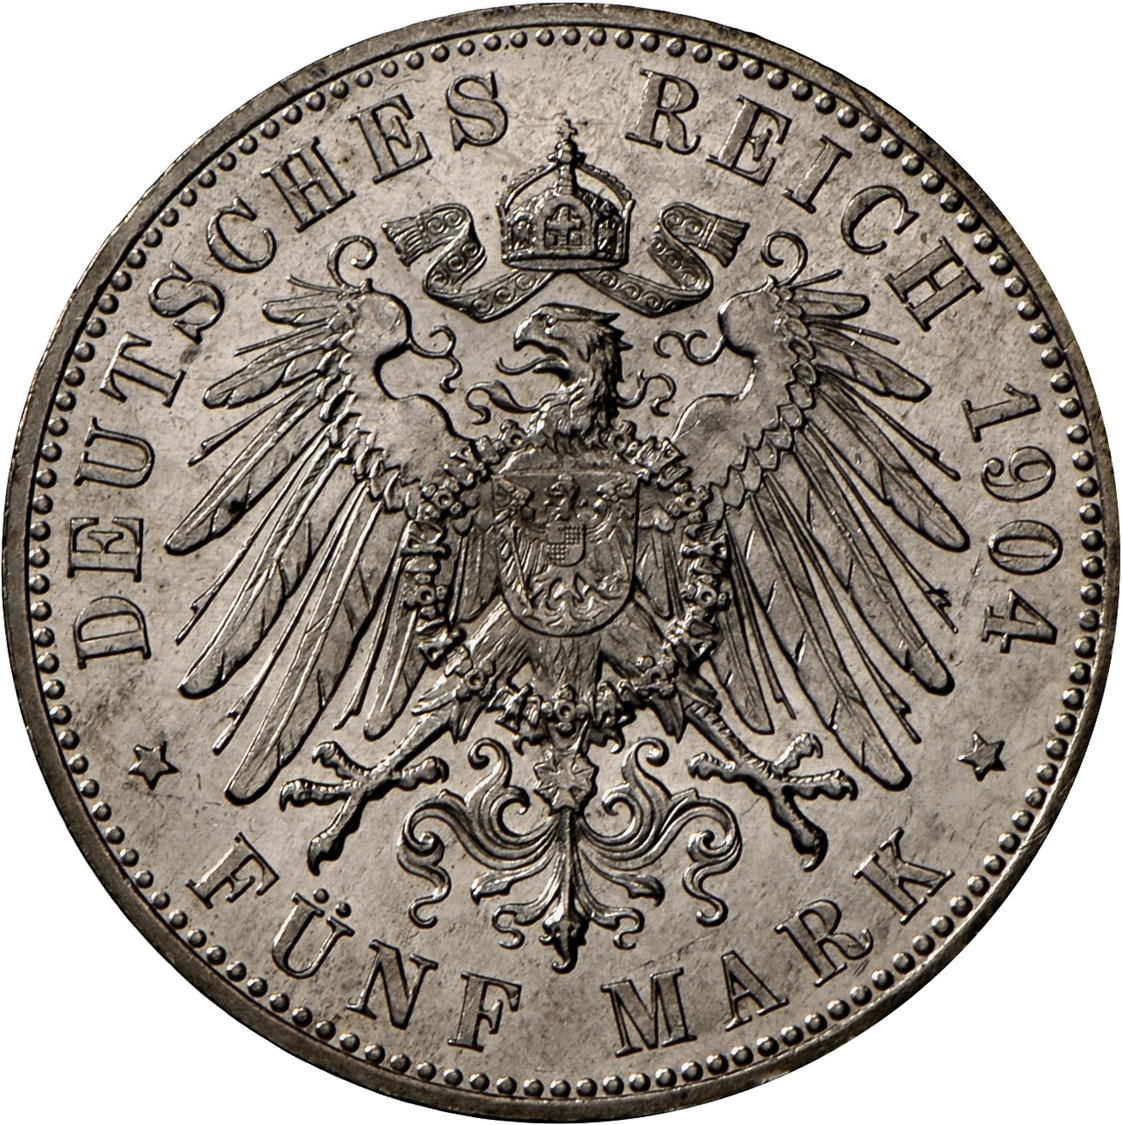 05368 Mecklenburg-Schwerin: Friedrich Franz IV. 1901-1918:, 5 Mark 1904 A, Jaeger 87, Feine Kratzer, Vorzüglich-Stempelg - Taler Et Doppeltaler